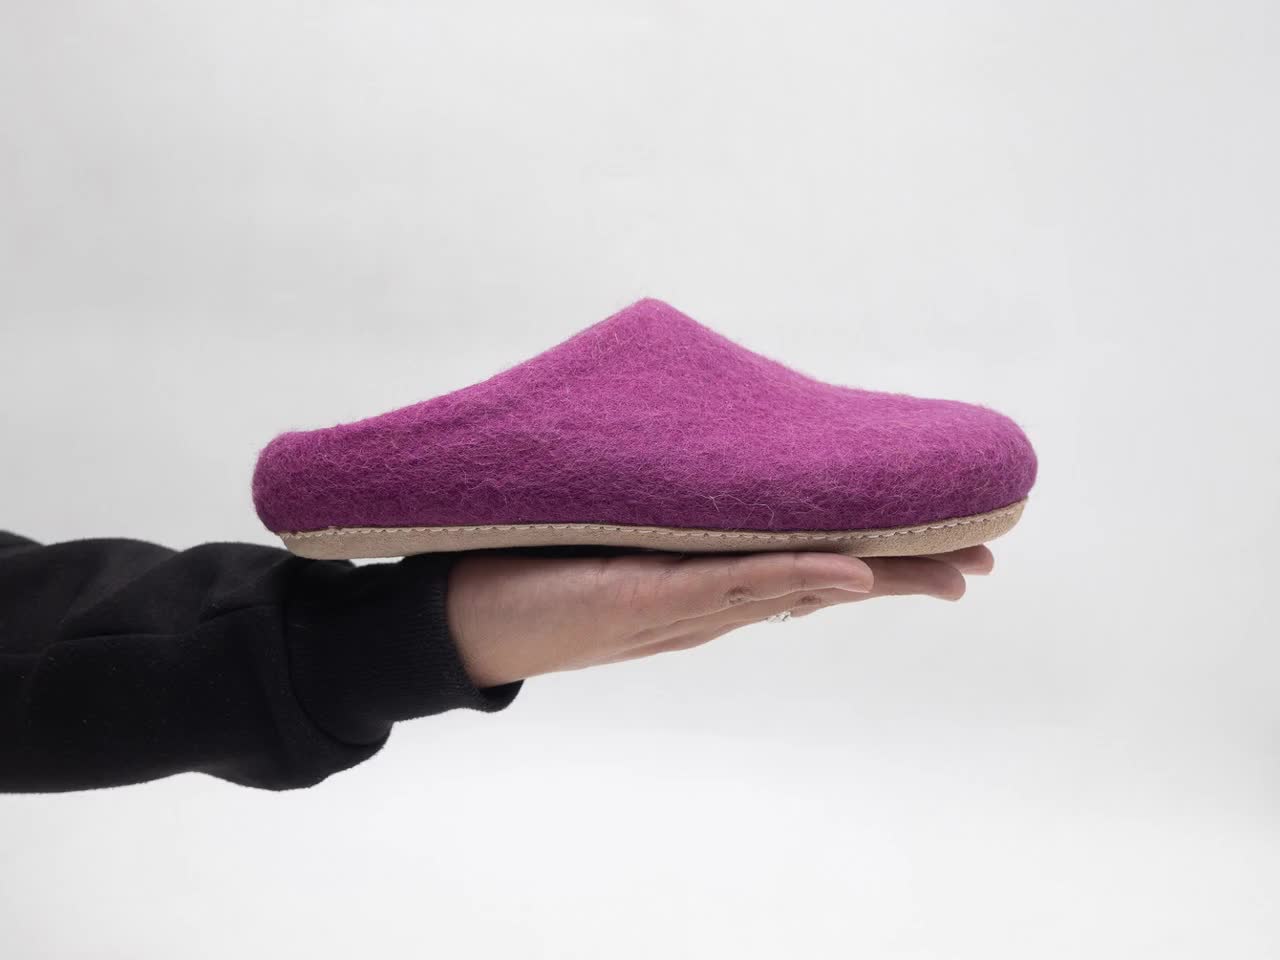 Xero Shoes Pagose - Calzado minimalista Mujer, Envío gratuito